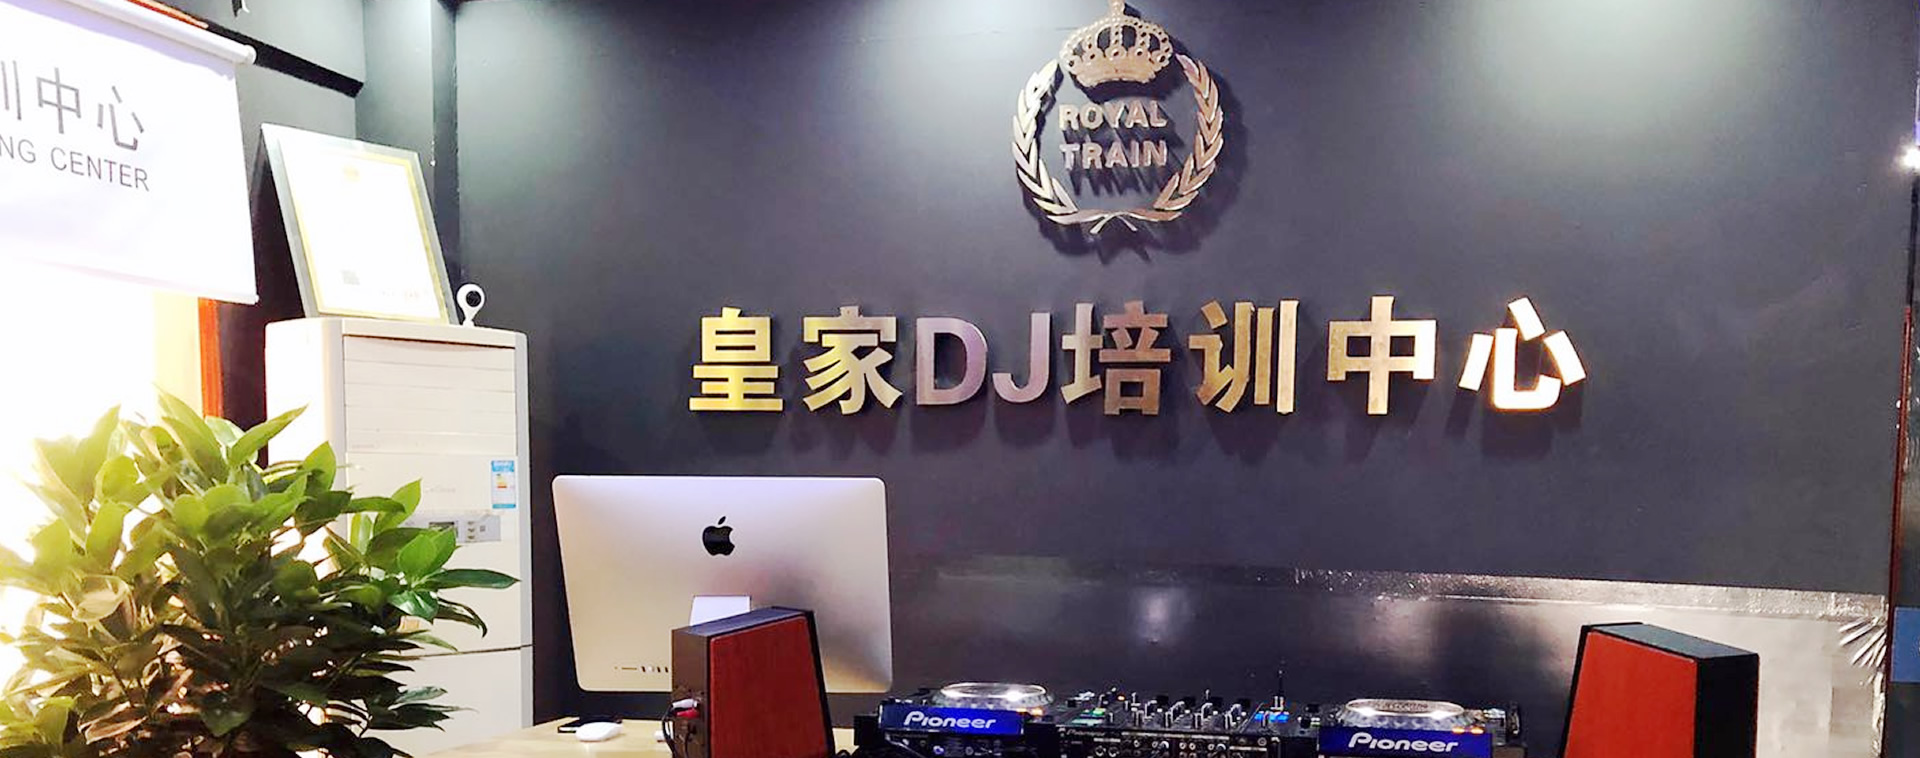 皇家星空DJ培训中心-昆明校区